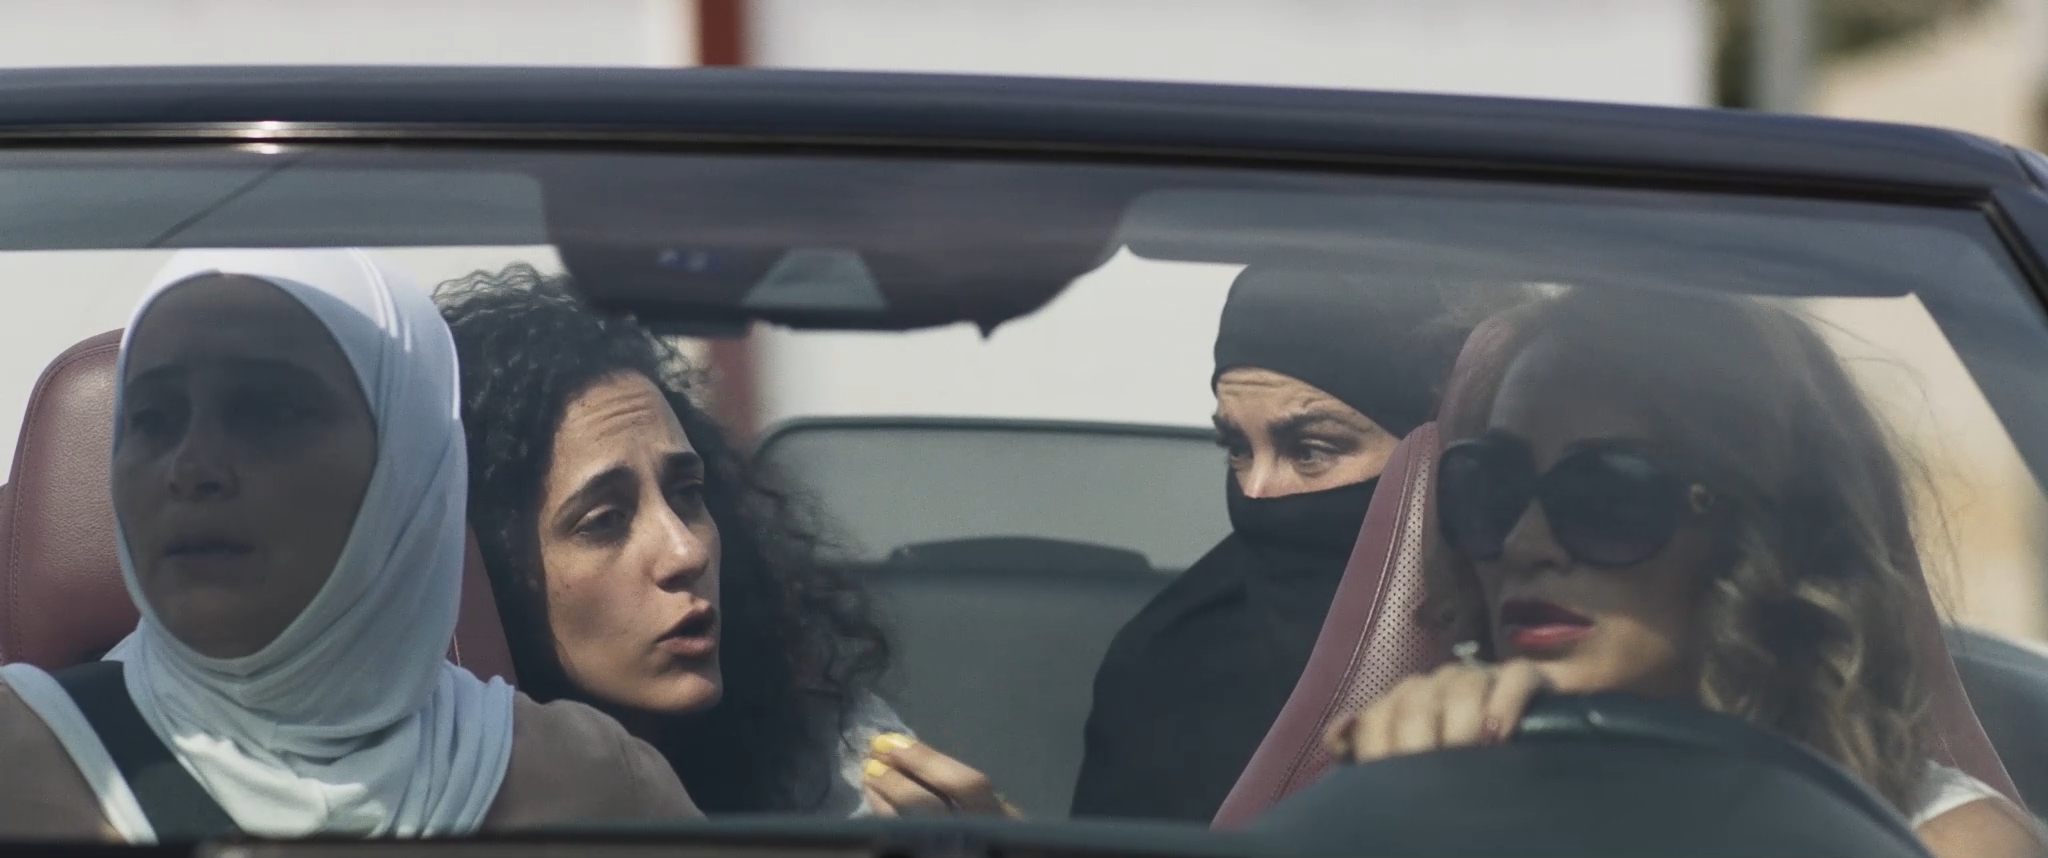 أويما 20 - Uima20 | "بنات عبد الرحمن" يفتتح مهرجان مالمو الثاني عشر للسينما العربية